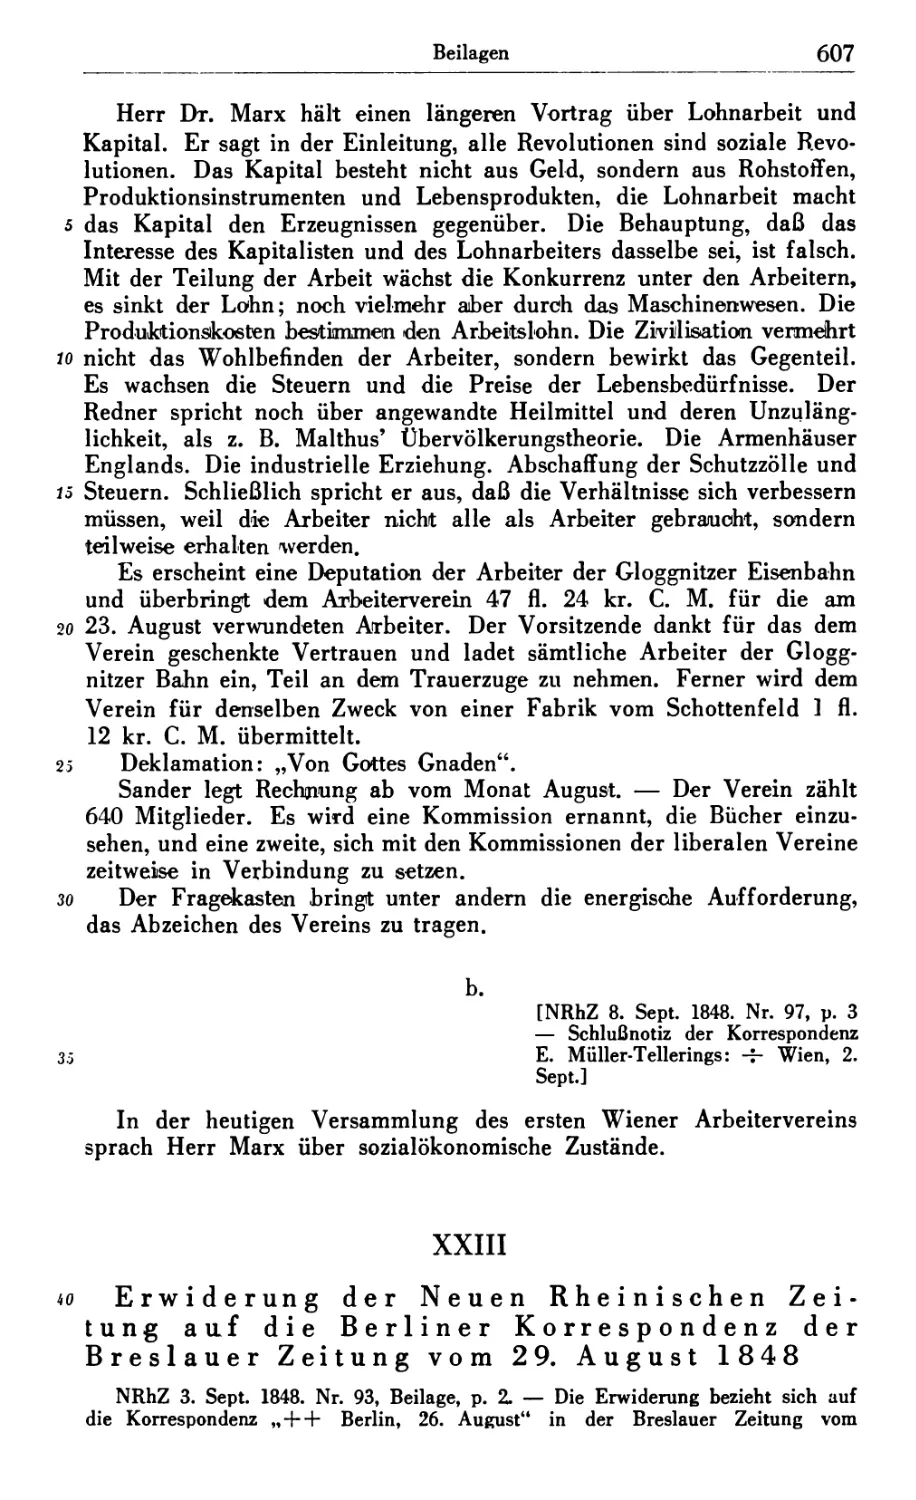 XXIII. Erwiderung der Neuen Rheinischen Zeitung auf die Berliner Korrespondenz der Breslauer Zeitung vom 29. August 1848